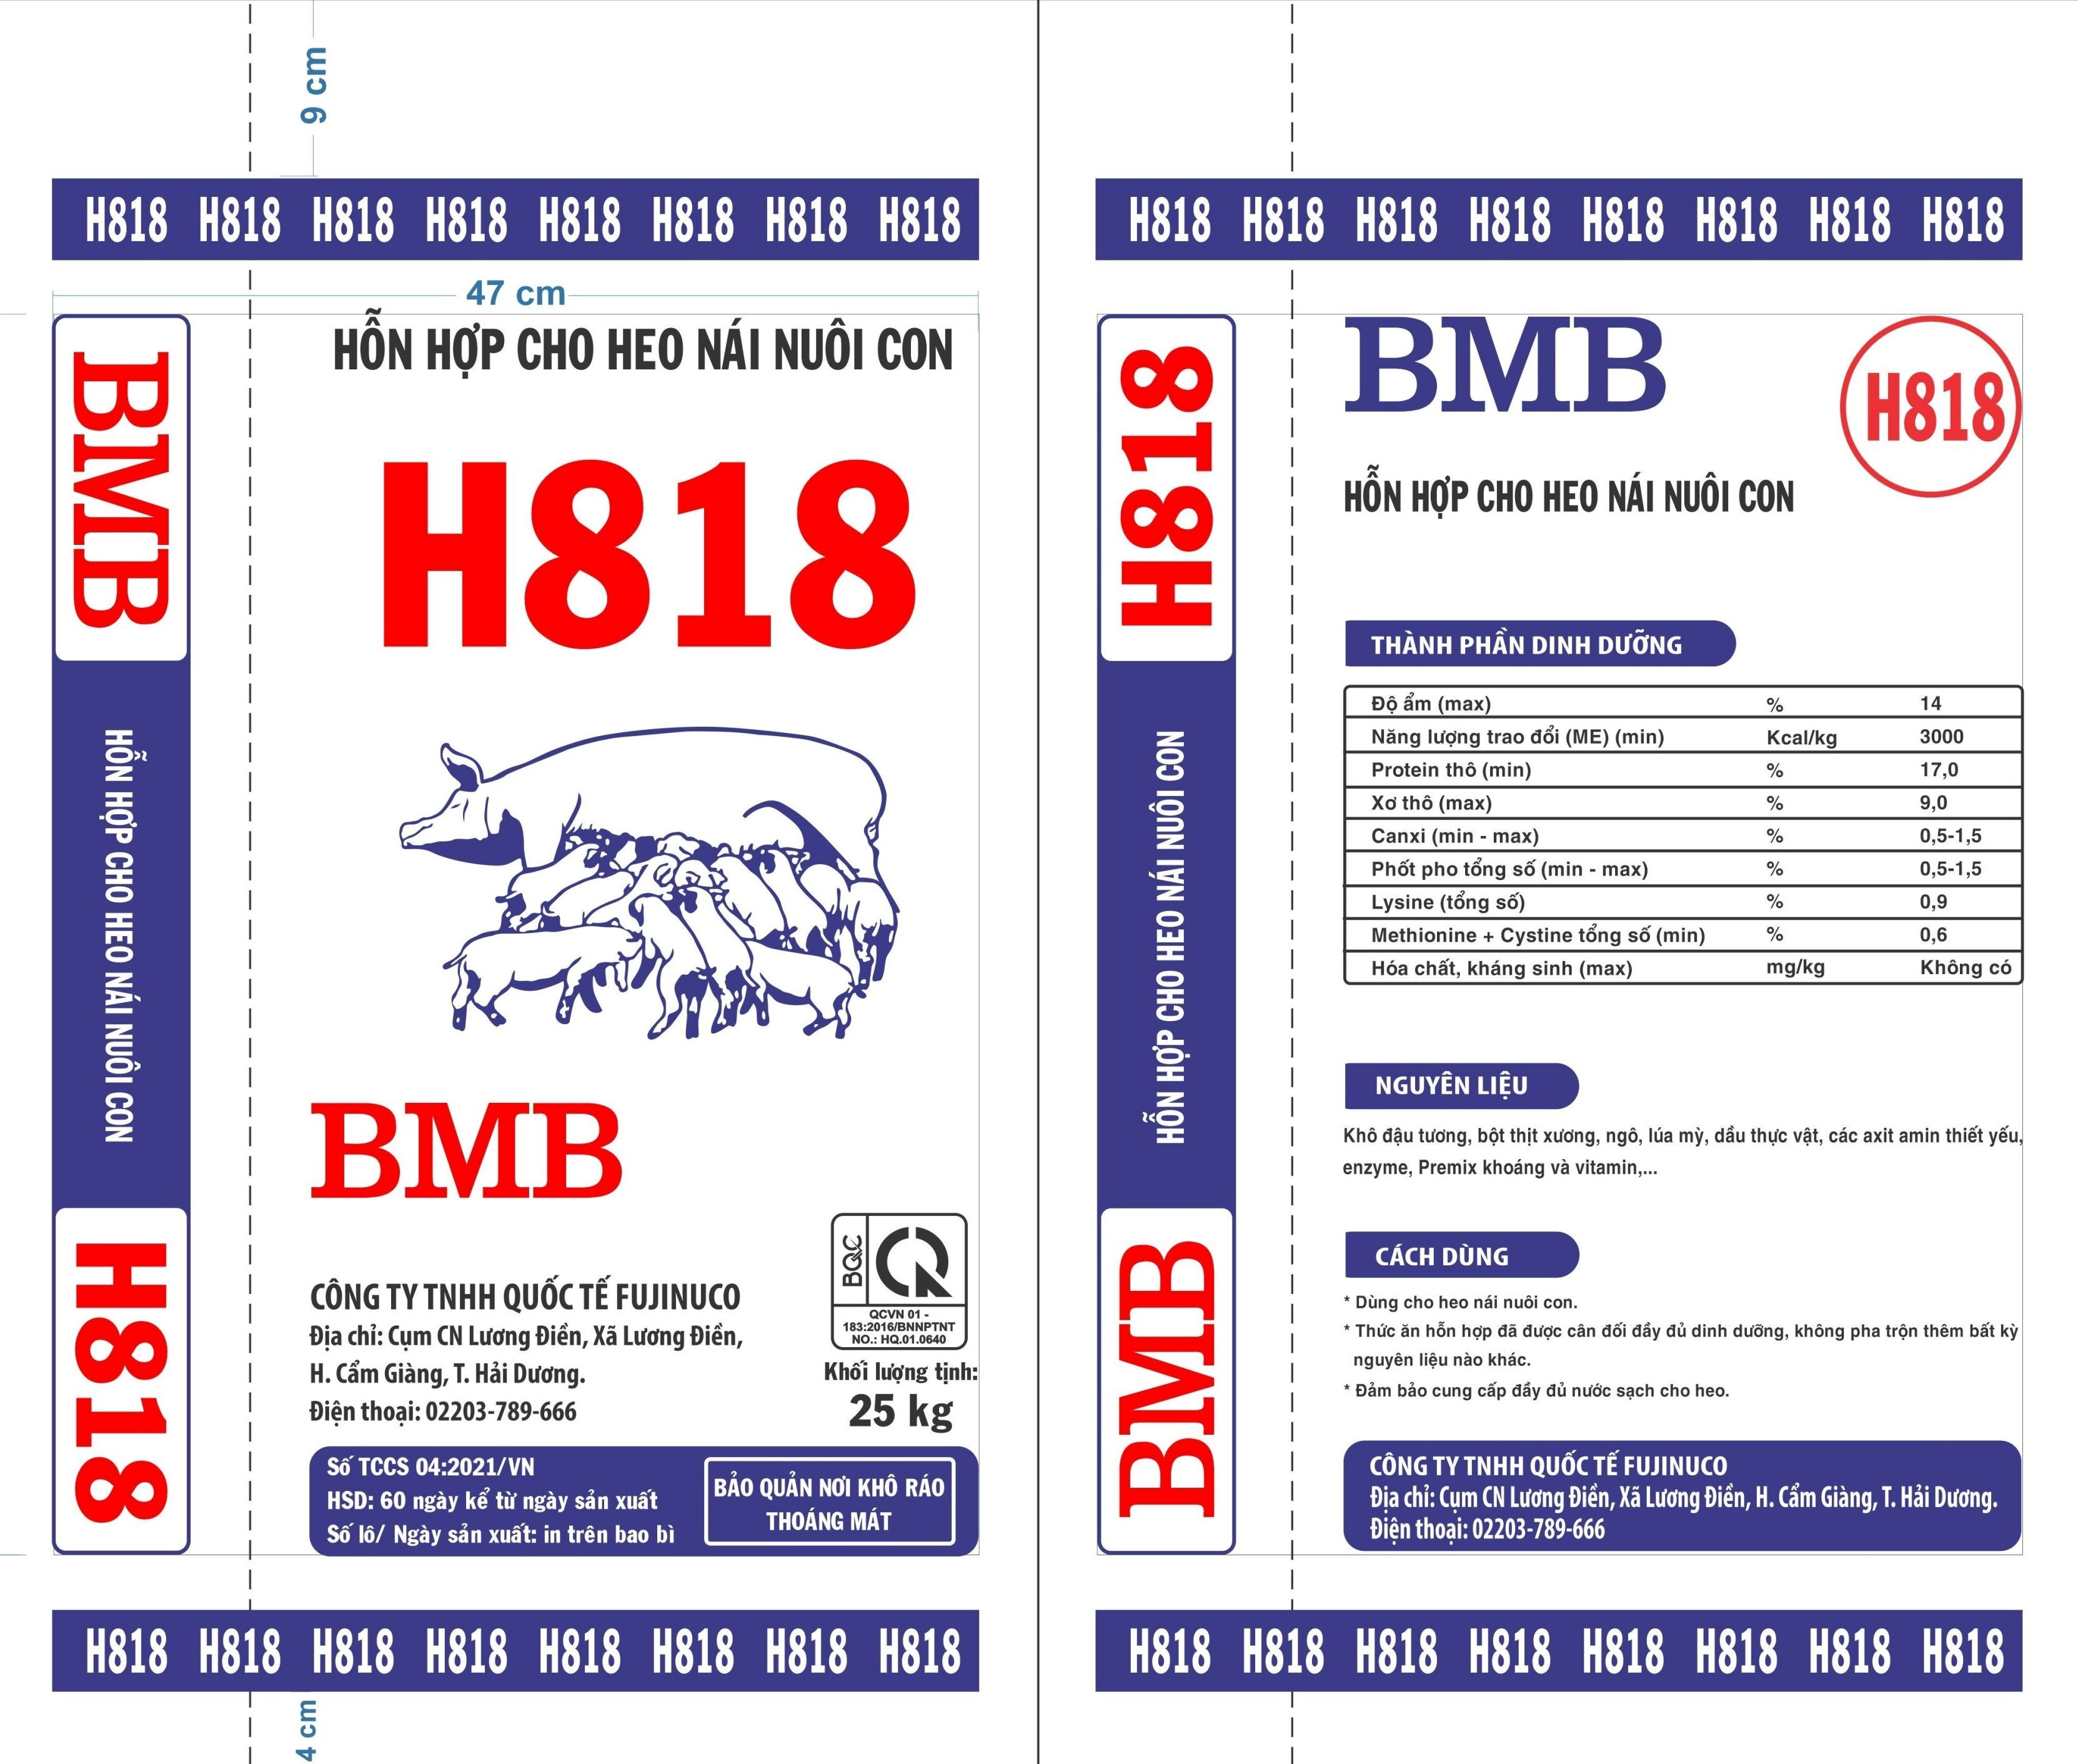 BMB-H818